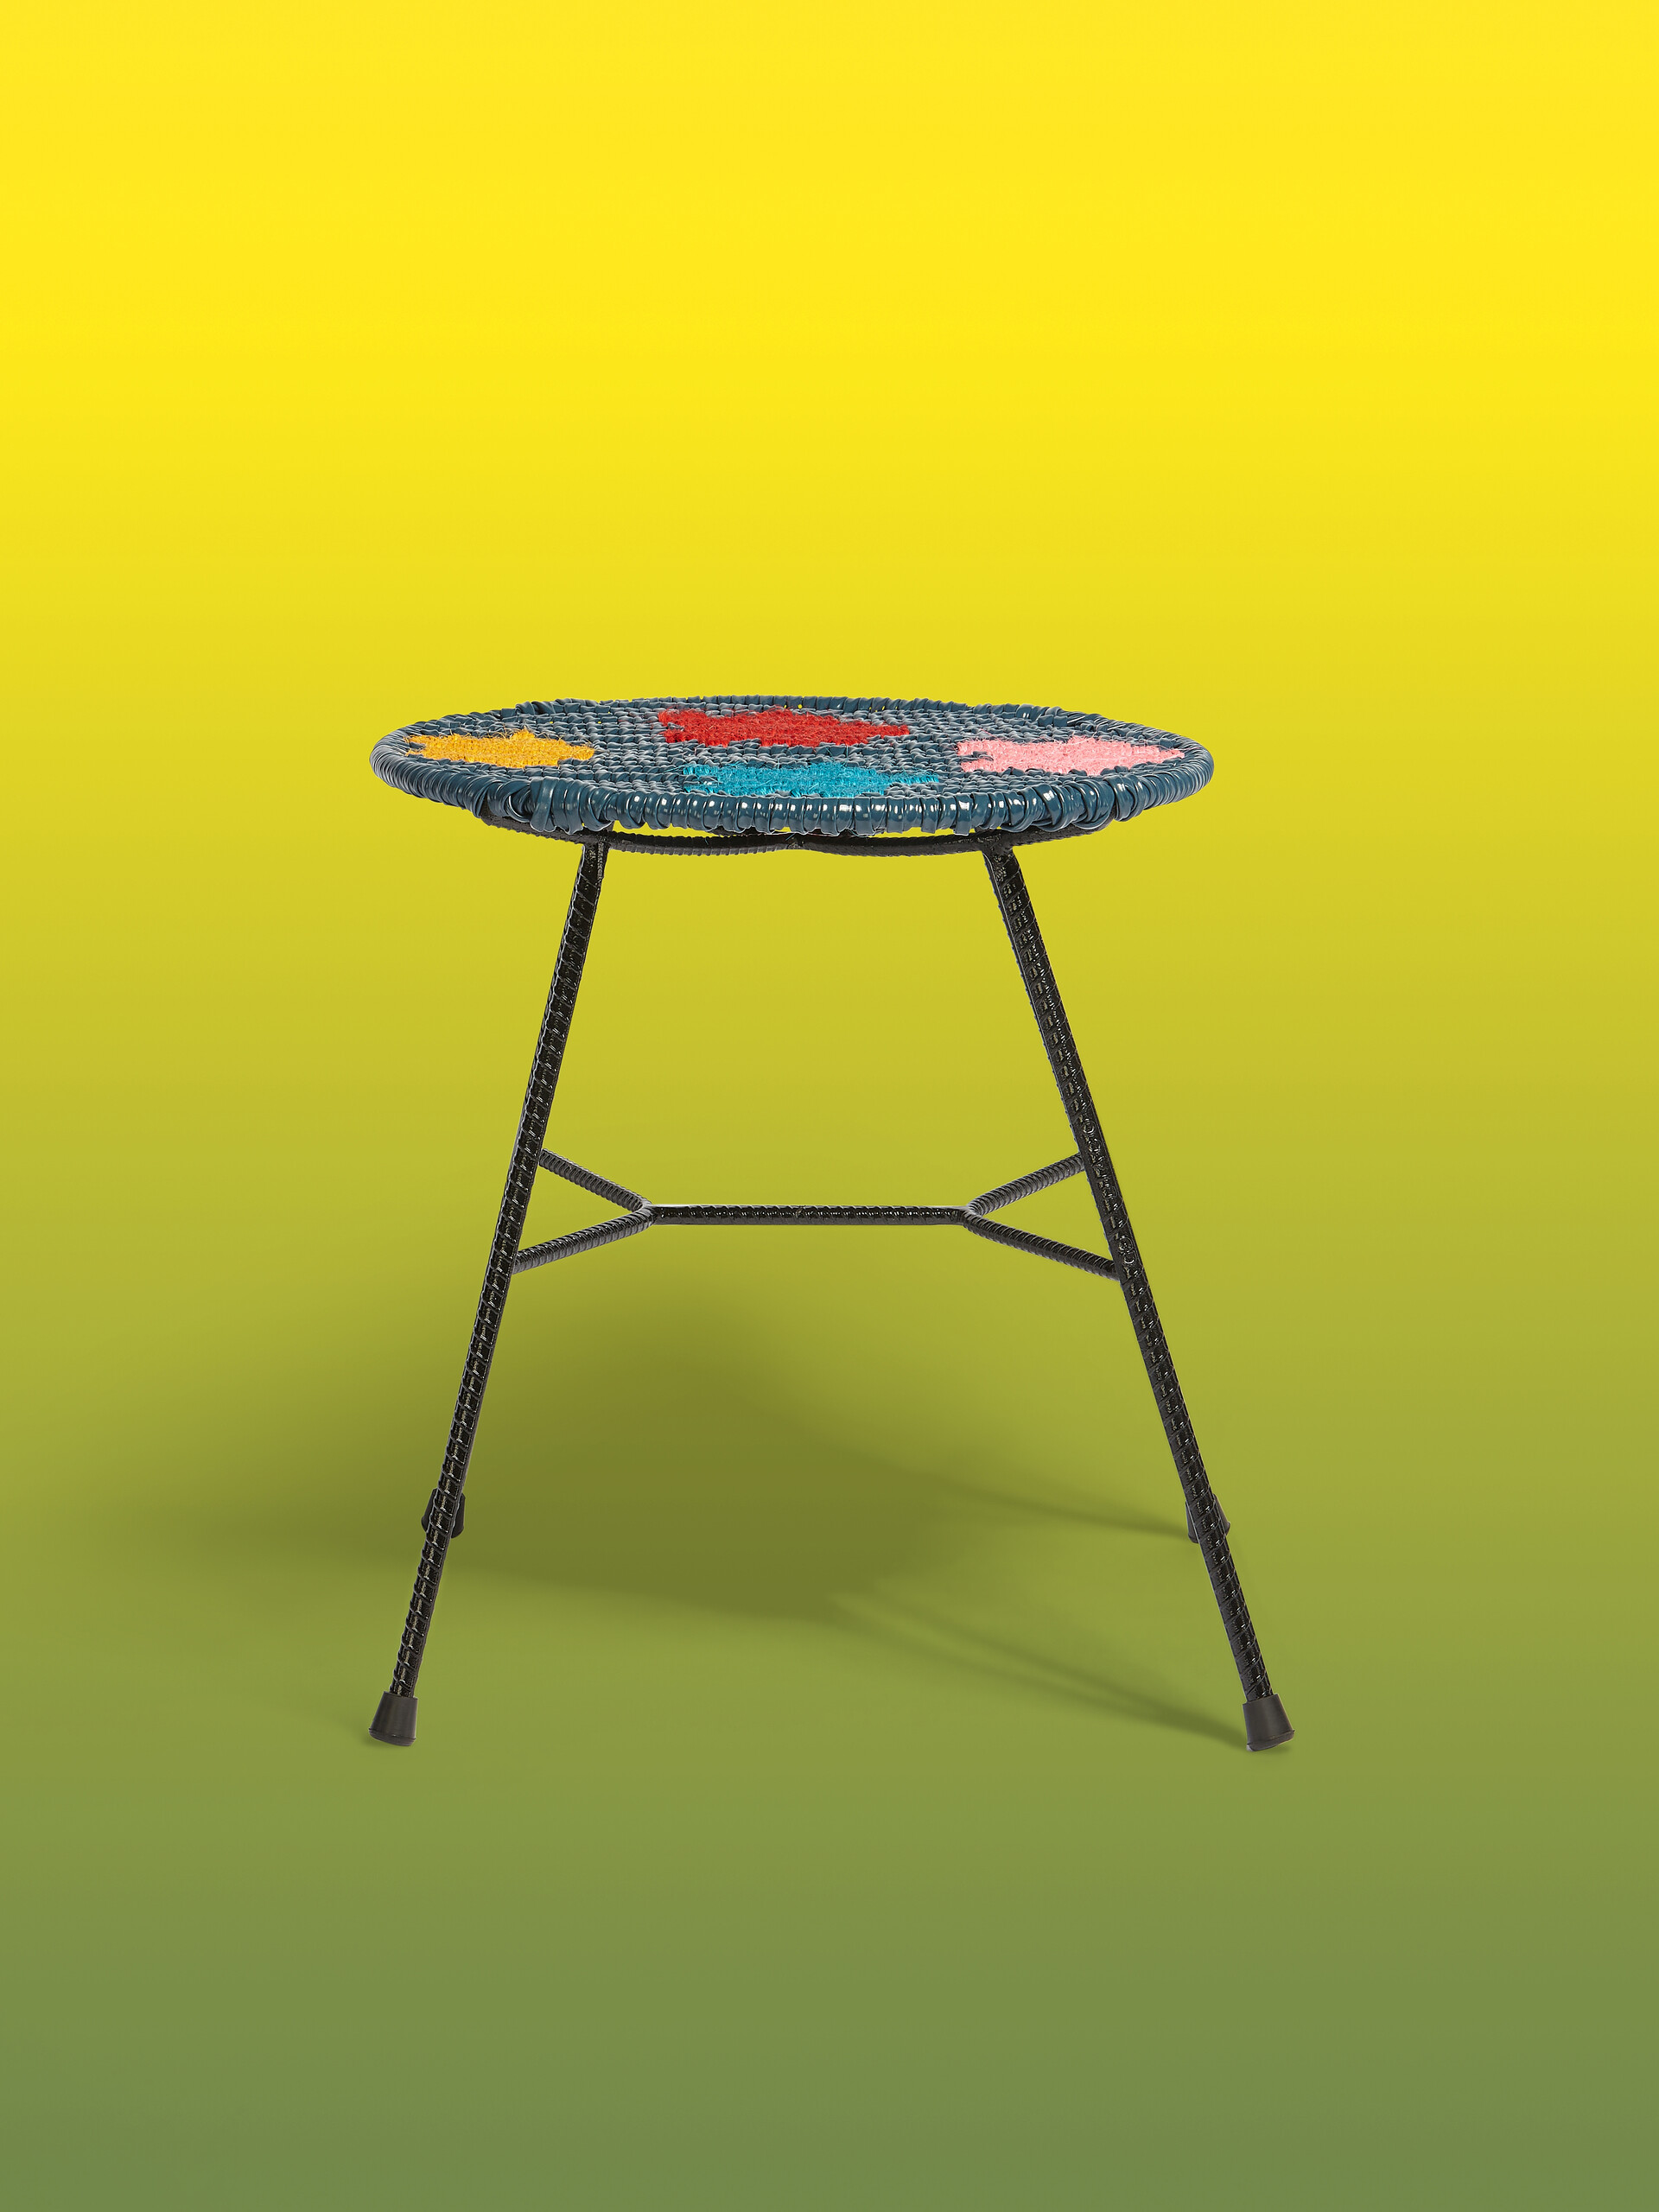 Sgabello-tavolo tondo MARNI MARKET in ferro PVC colorblock - Arredamento - Image 1